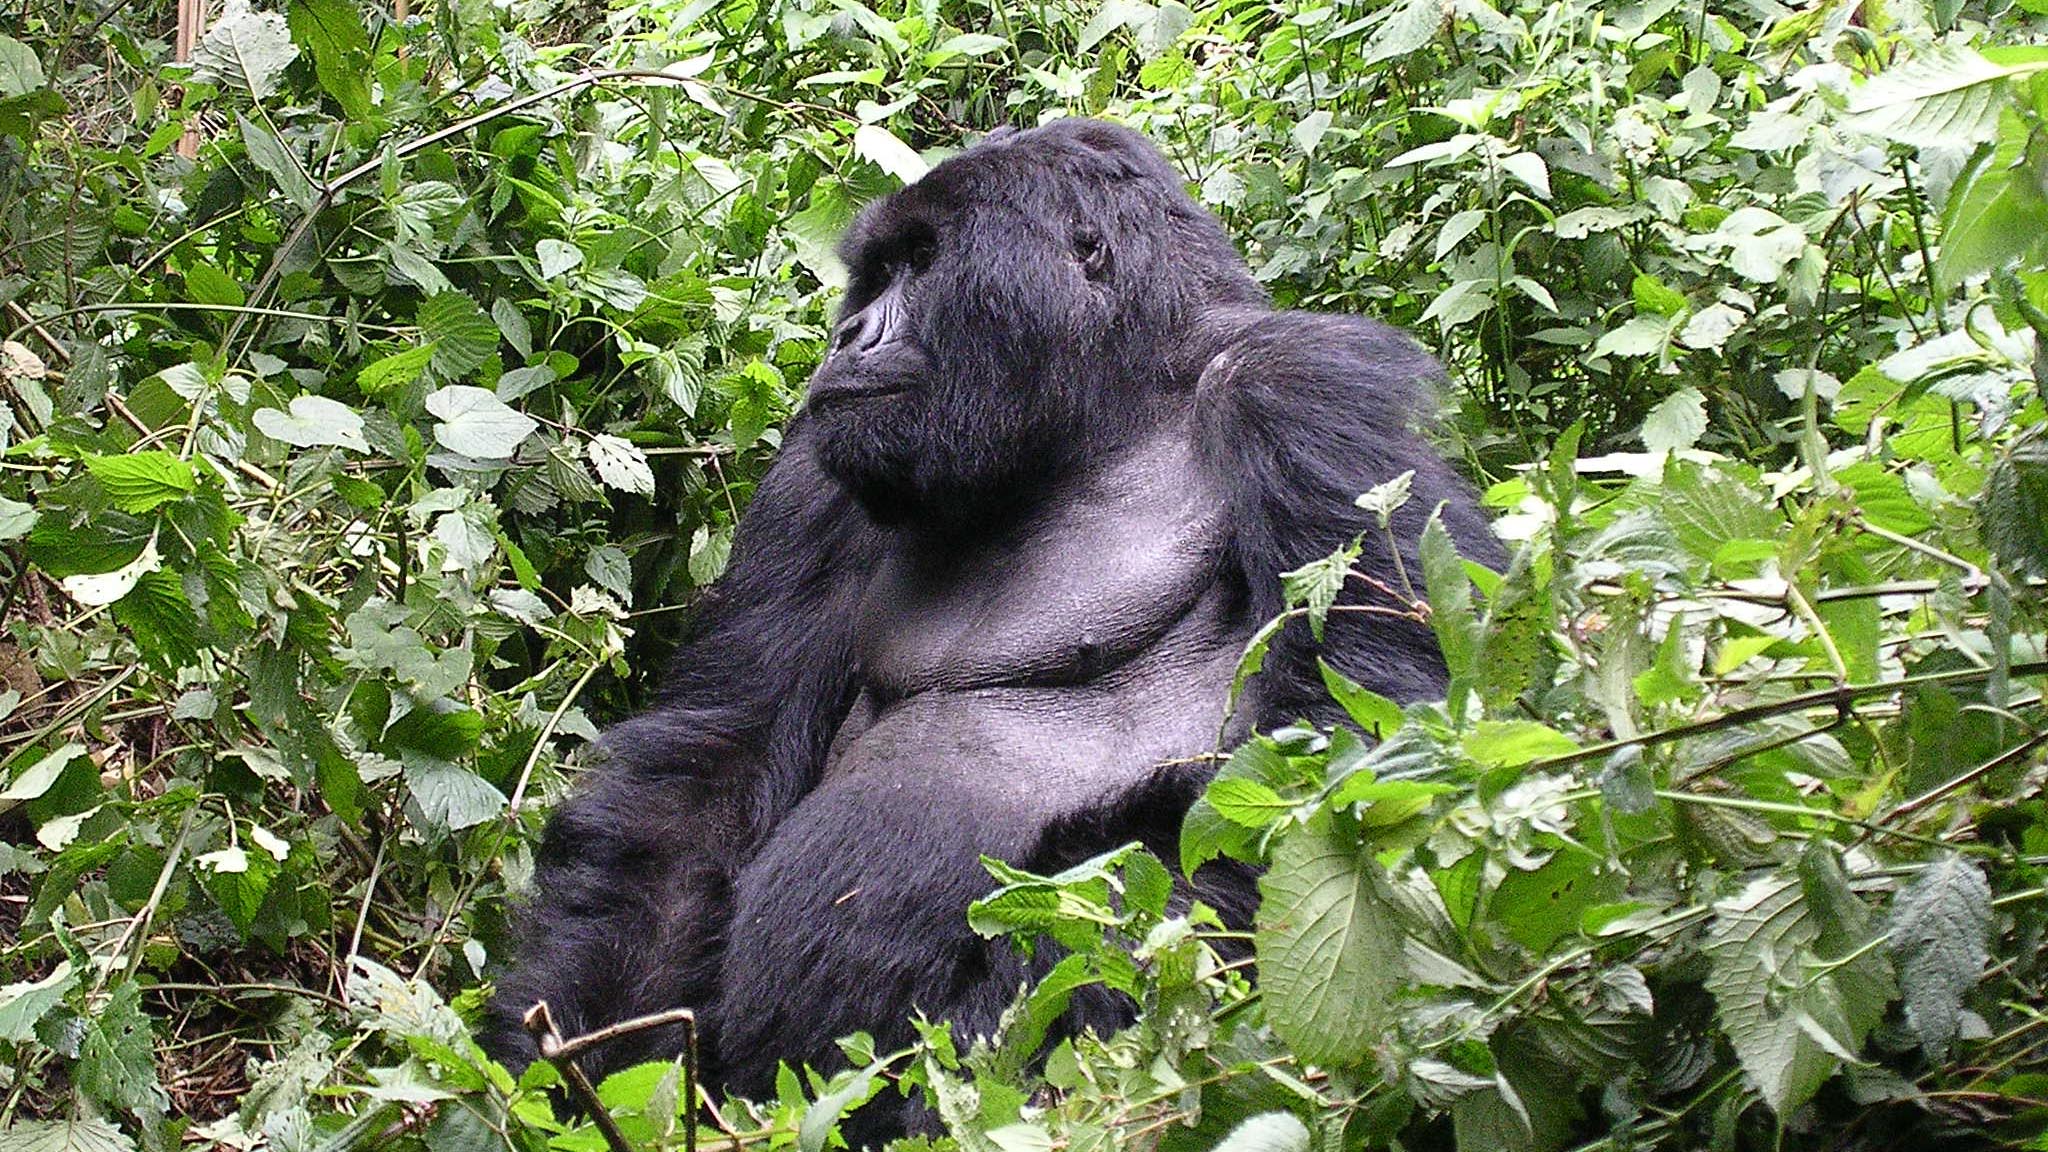 es preocupante ver al gorila oriental, una de las especies más cercana al hombre, encaminarse a la extinción